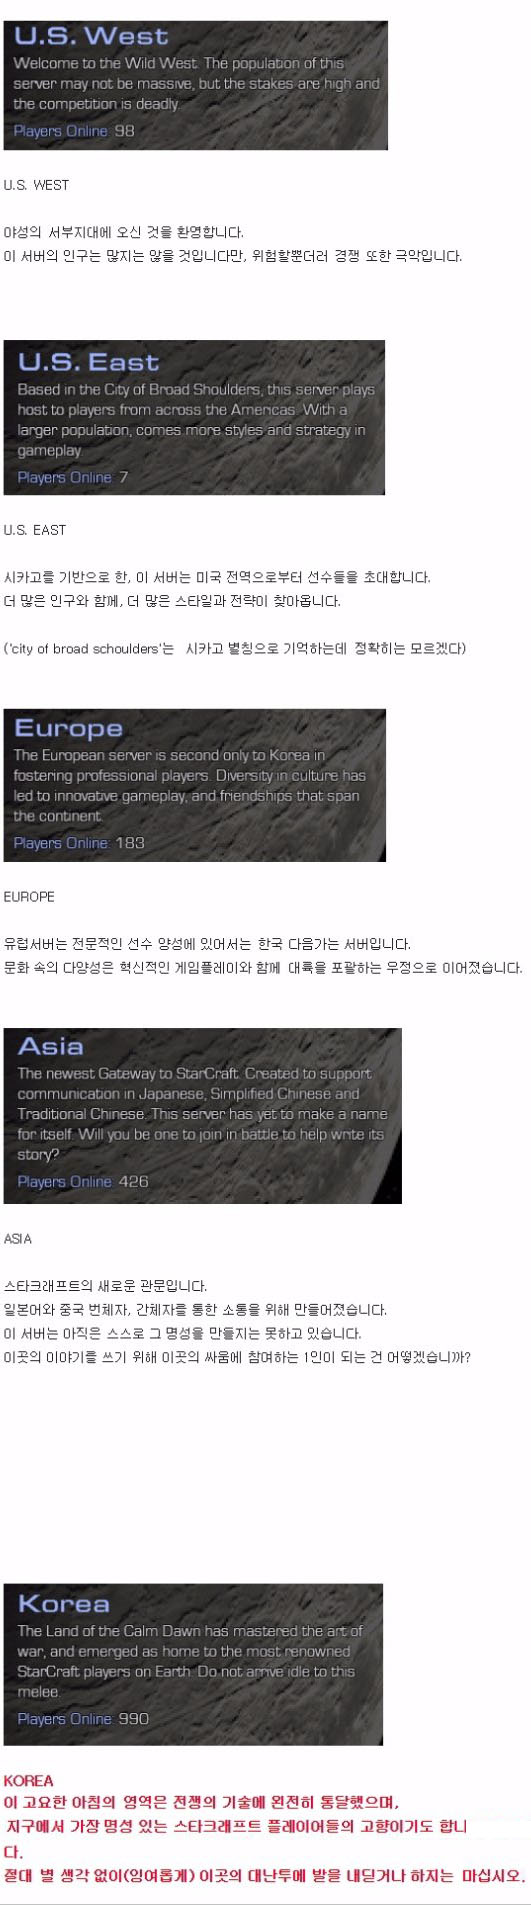 9 Korea는 아시아가 아닙니다 출시20년차에 아직도 초보밖에 없다는 그 게임.jpg